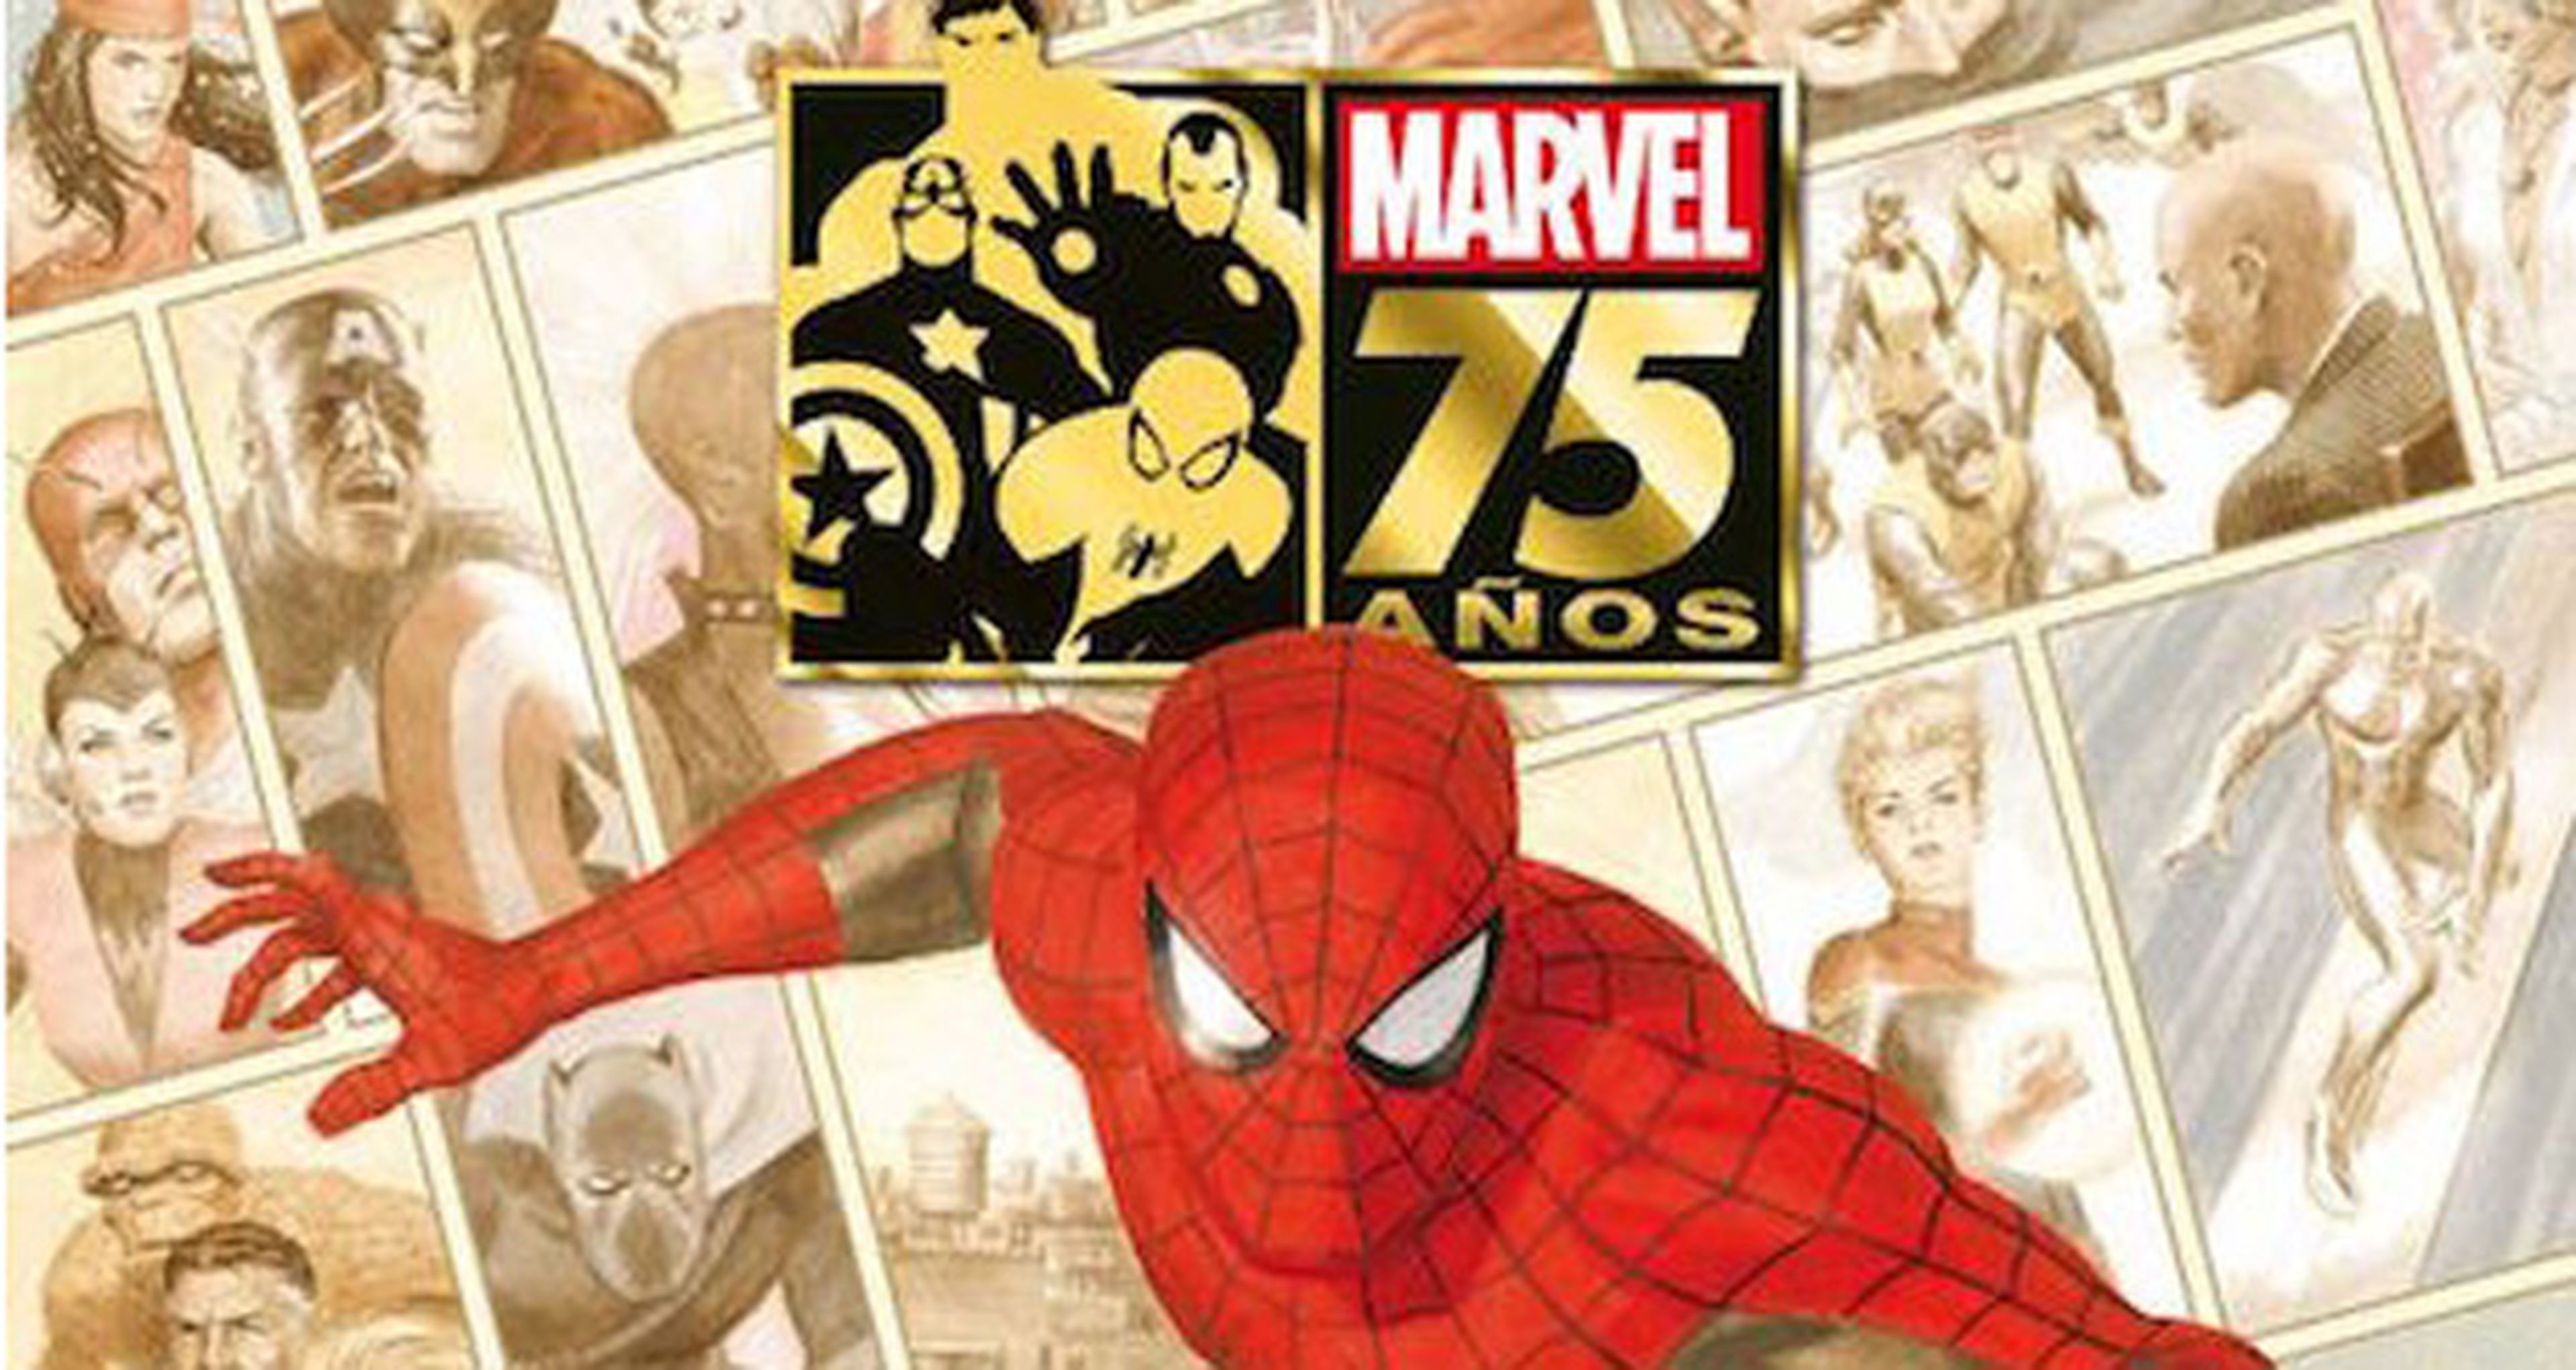 Concurso: Sorteamos un Marvel Gold - Marvel 75 Años